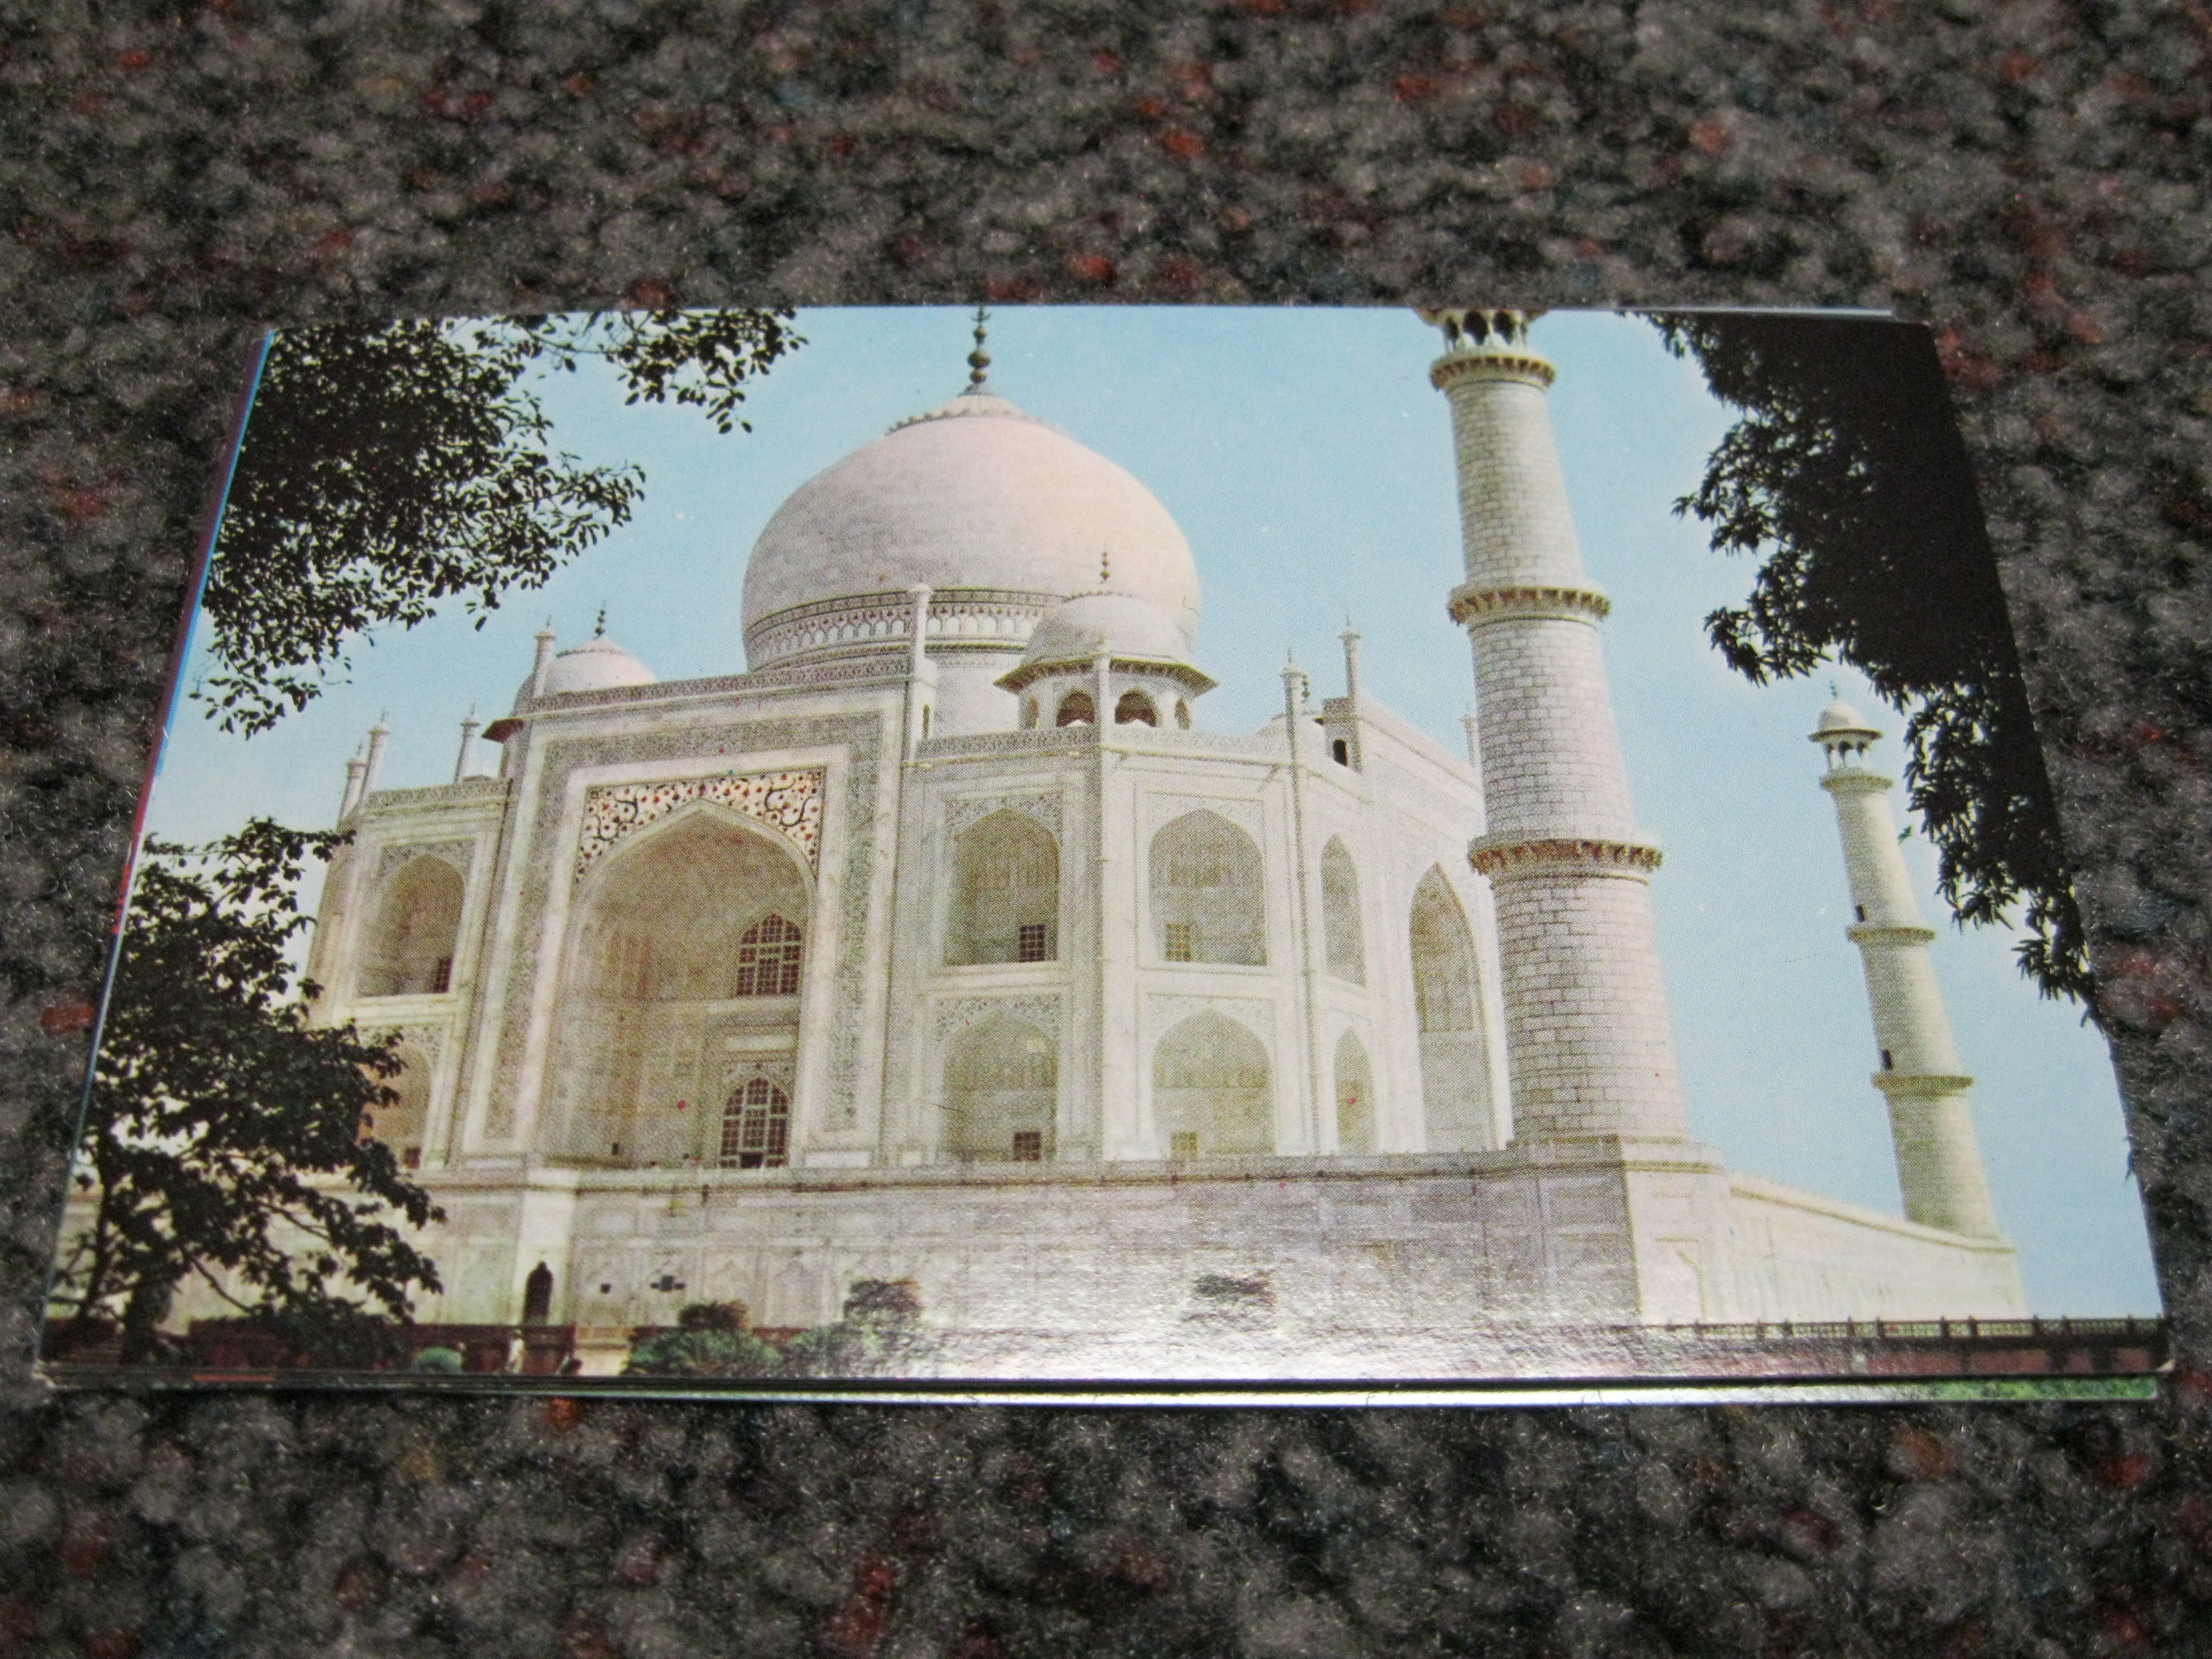 The Taj Mahal India Pan Am post card